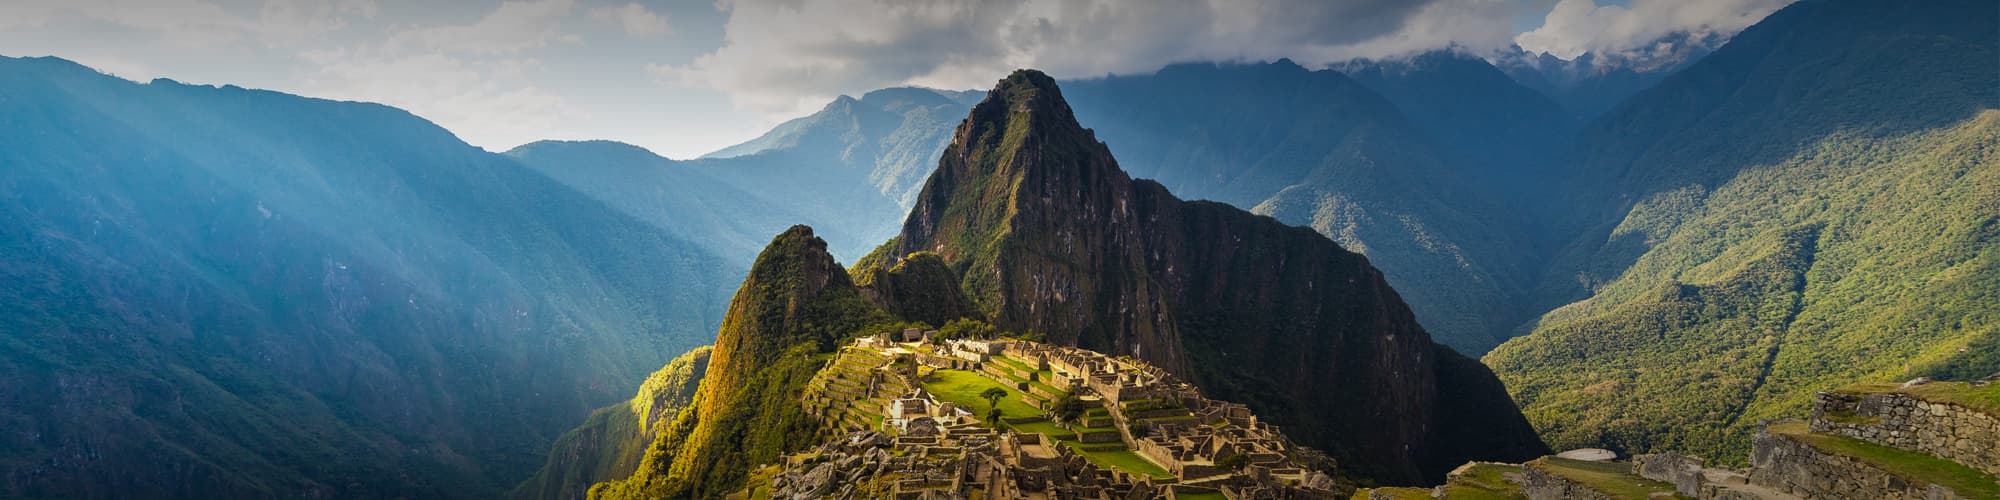 Voyage sur mesure Pérou © Oversnap / iStock